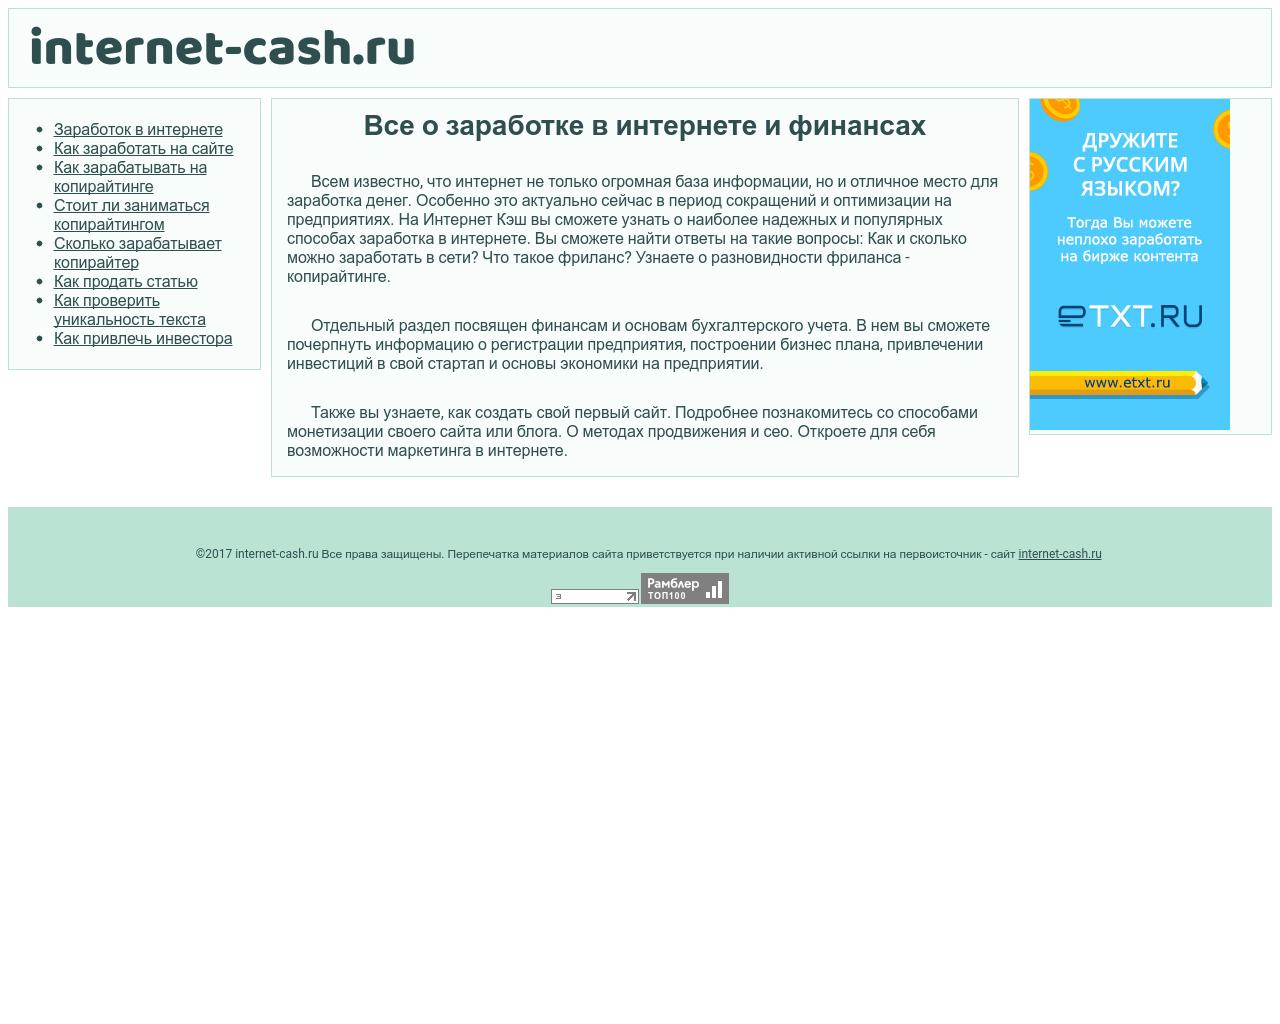 Изображение сайта internet-cash.ru в разрешении 1280x1024